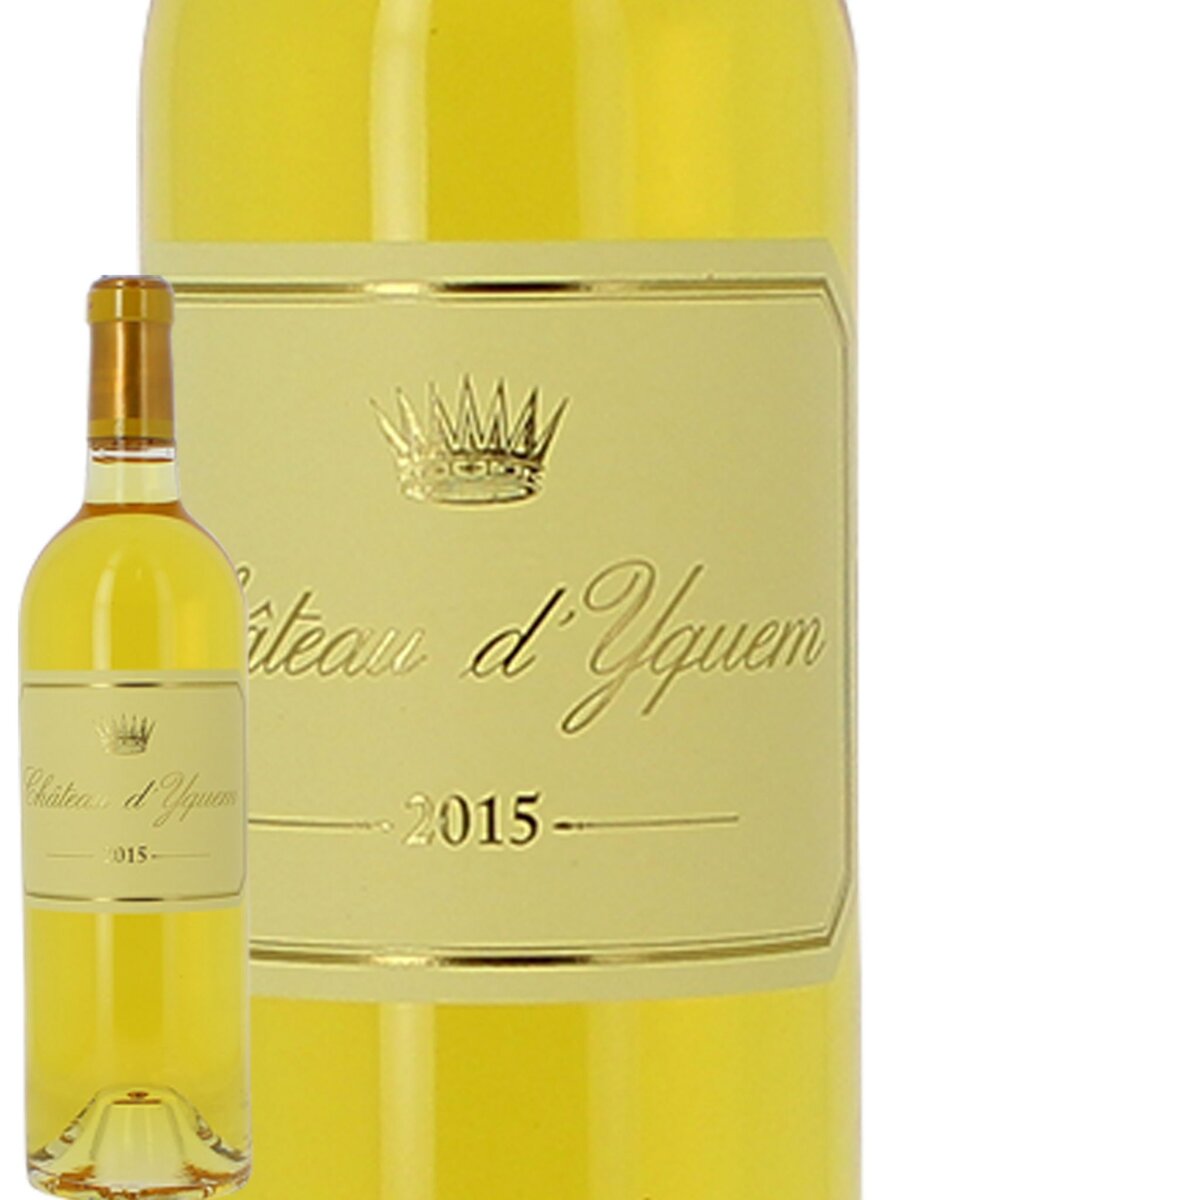 Château d'Yquem Sauternes 1er Grand Cru Classé Supérieur Blanc 2015